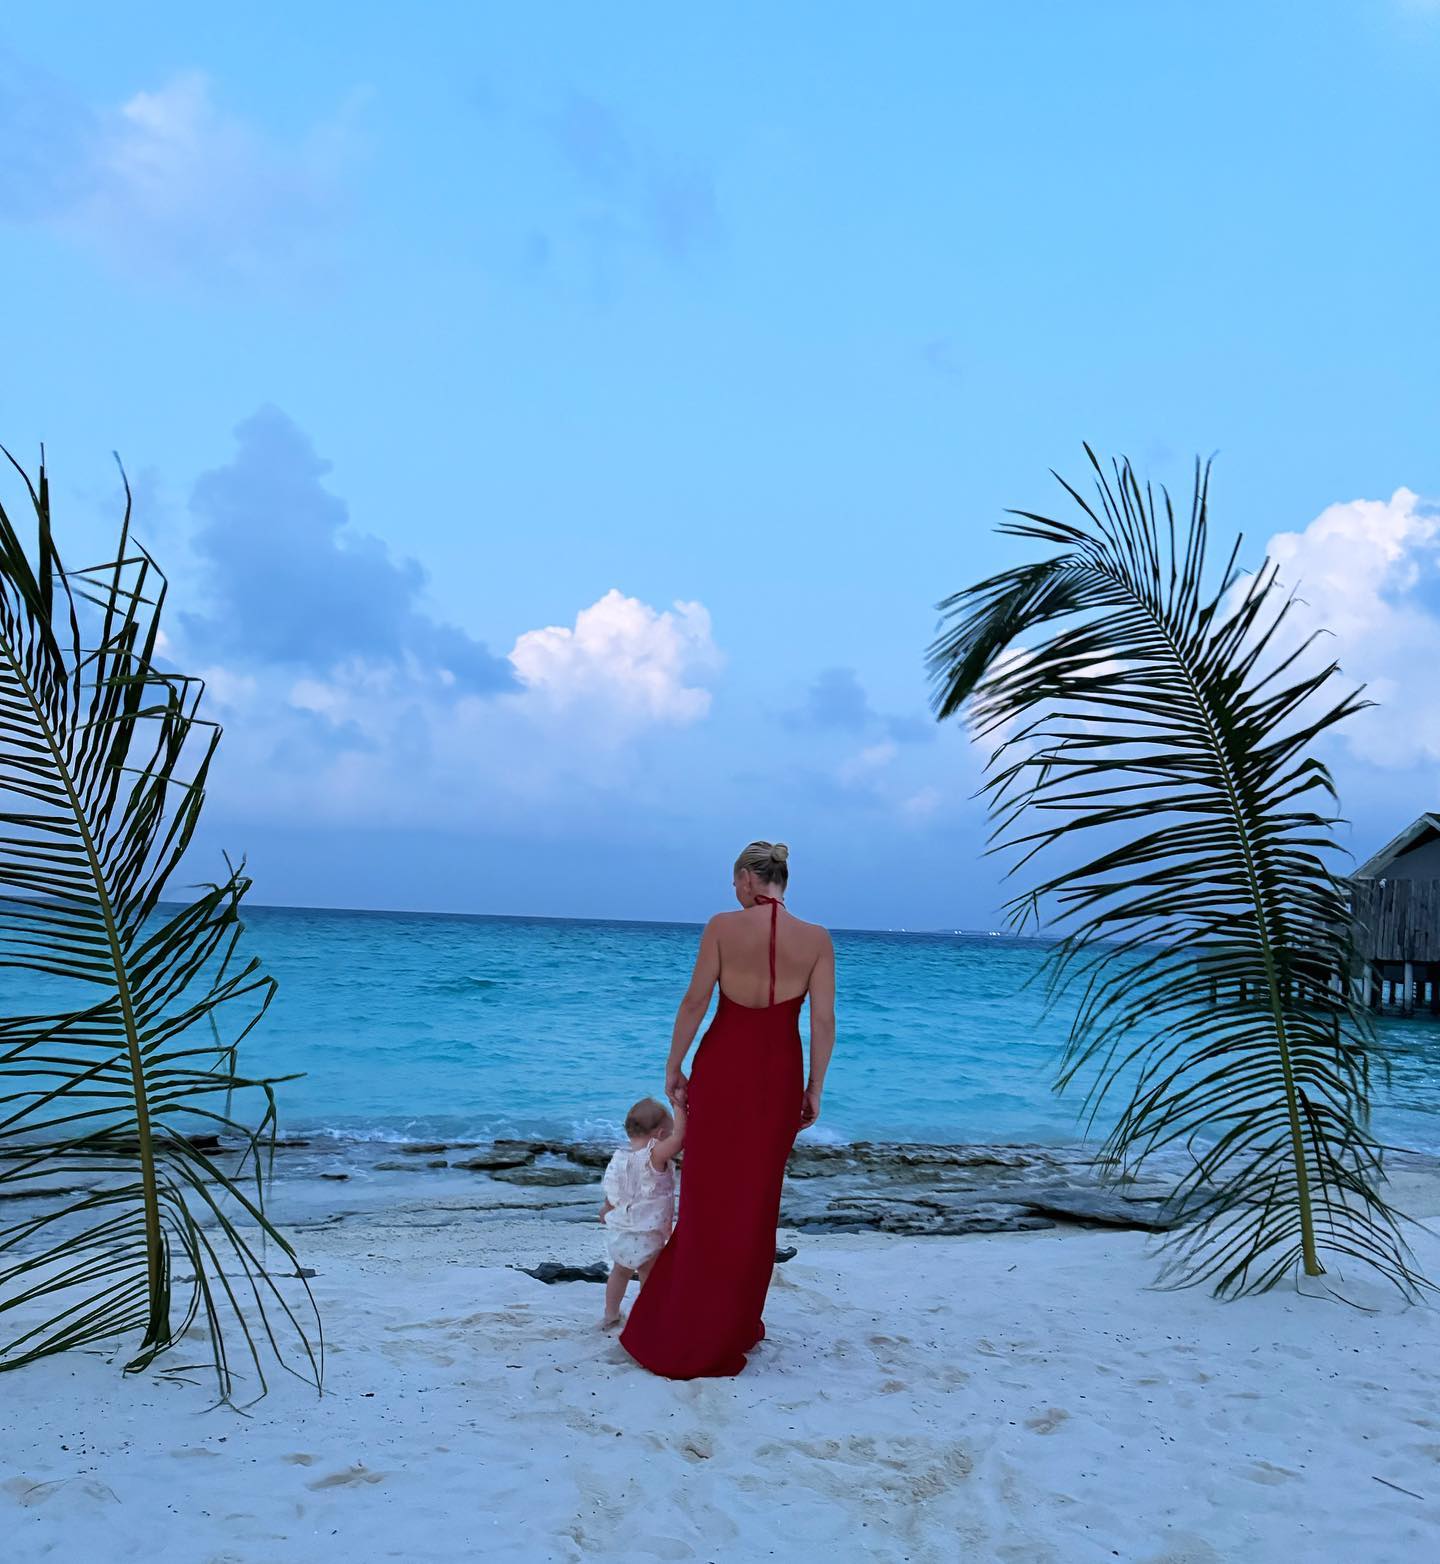 Billie hat einen Einblick in ihren spektakulären Familienurlaub auf den Malediven gegeben